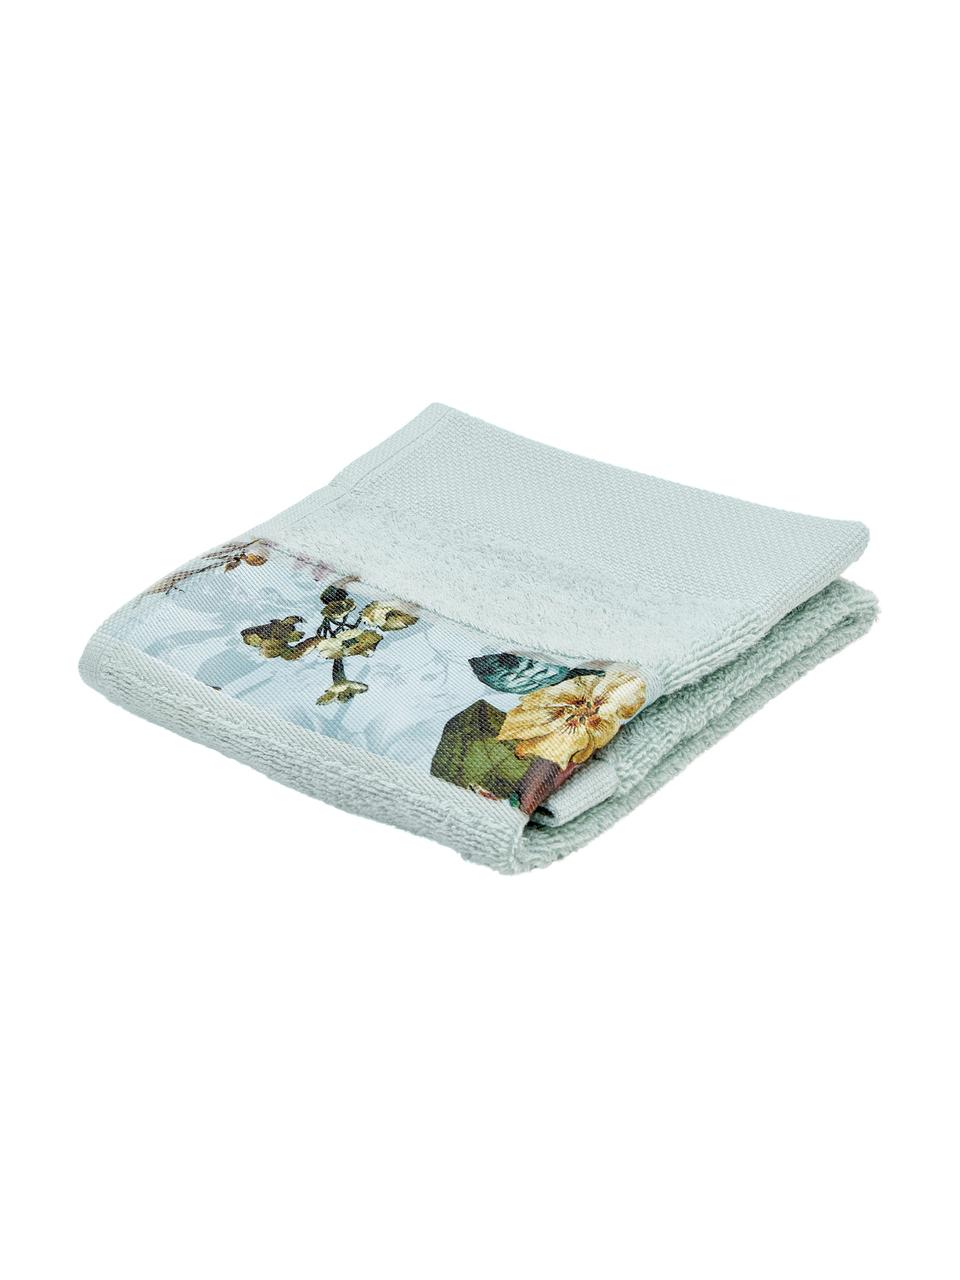 Ręcznik Fleur, różne rozmiary, 97% bawełna, 3% poliester, Zielony miętowy, wielobarwny, Ręcznik do rąk, S 55 x D 100 cm